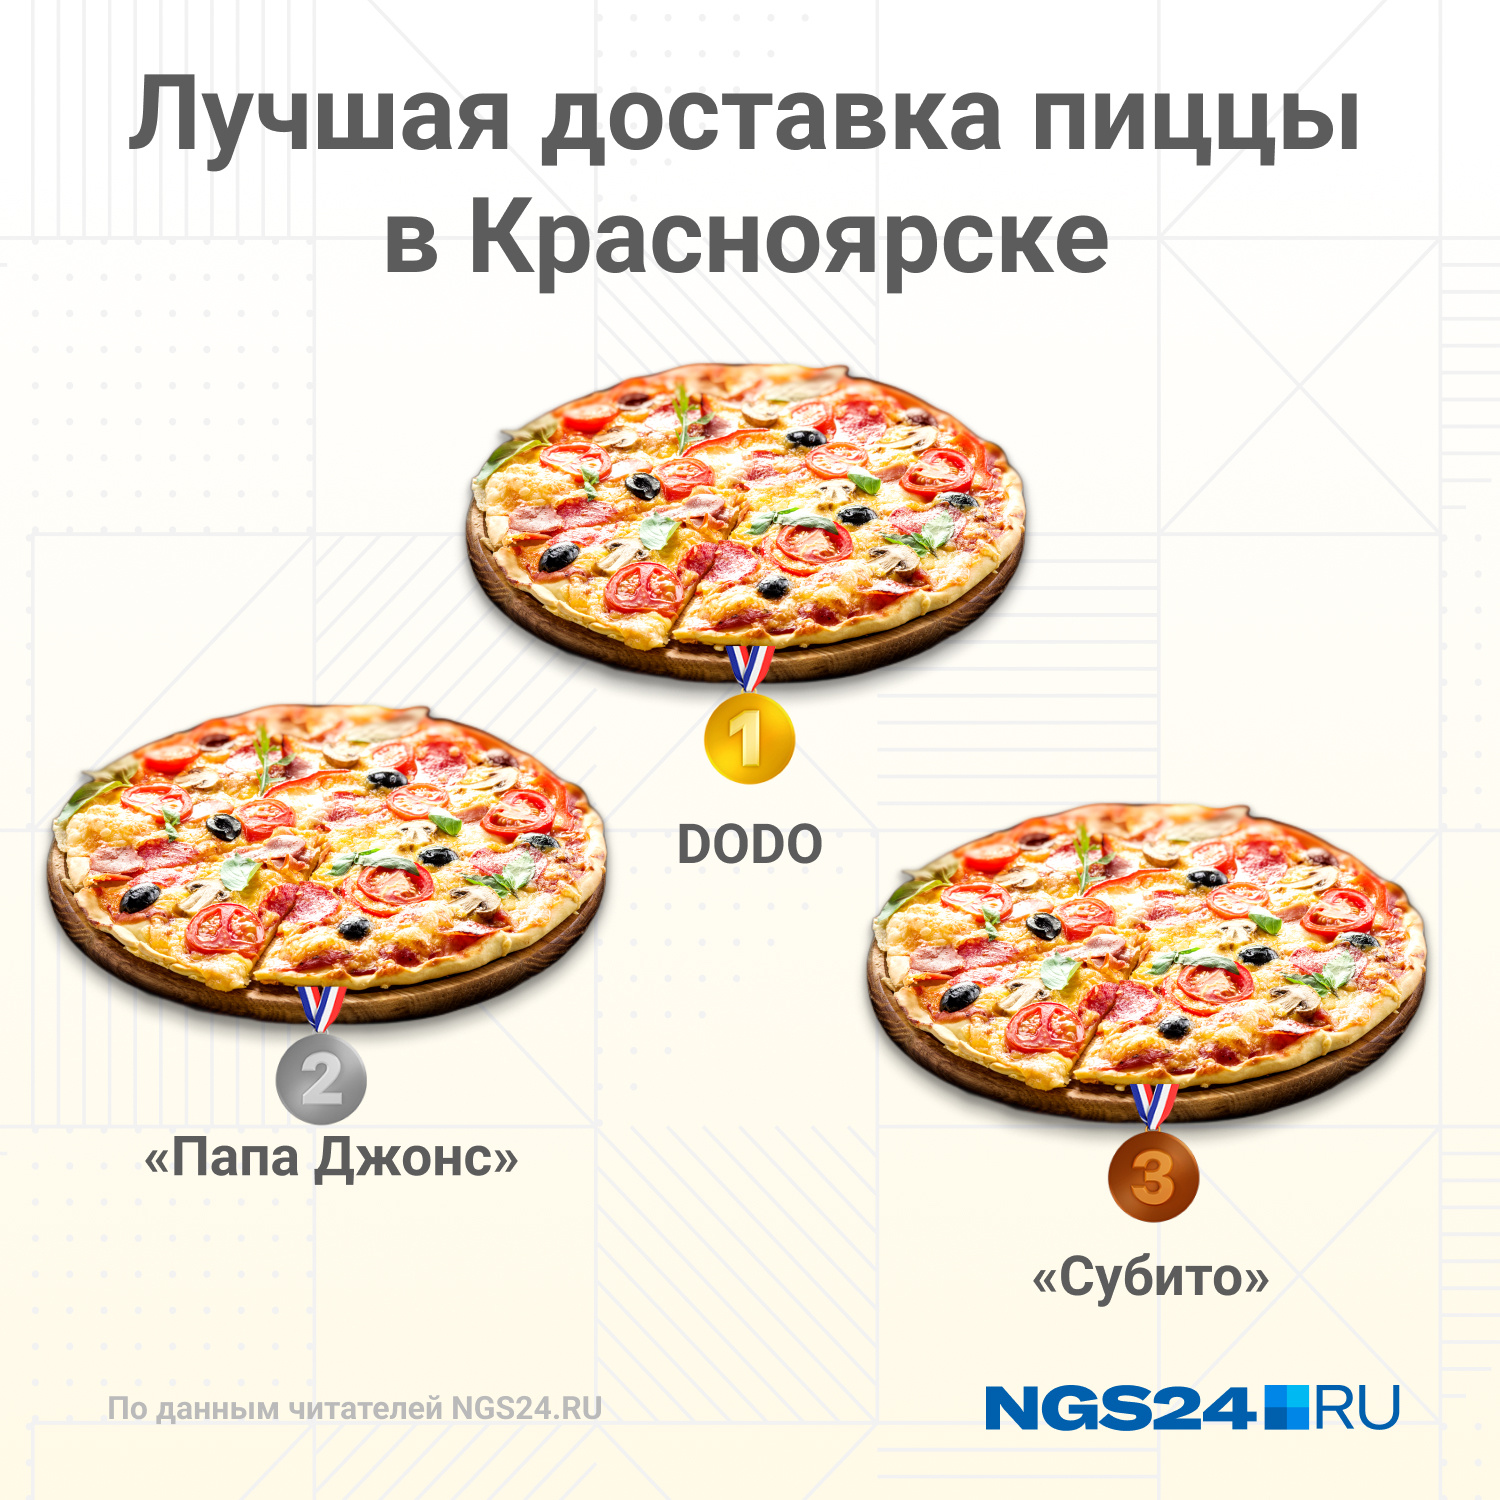 лучшая доставка пиццы в красноярске (120) фото